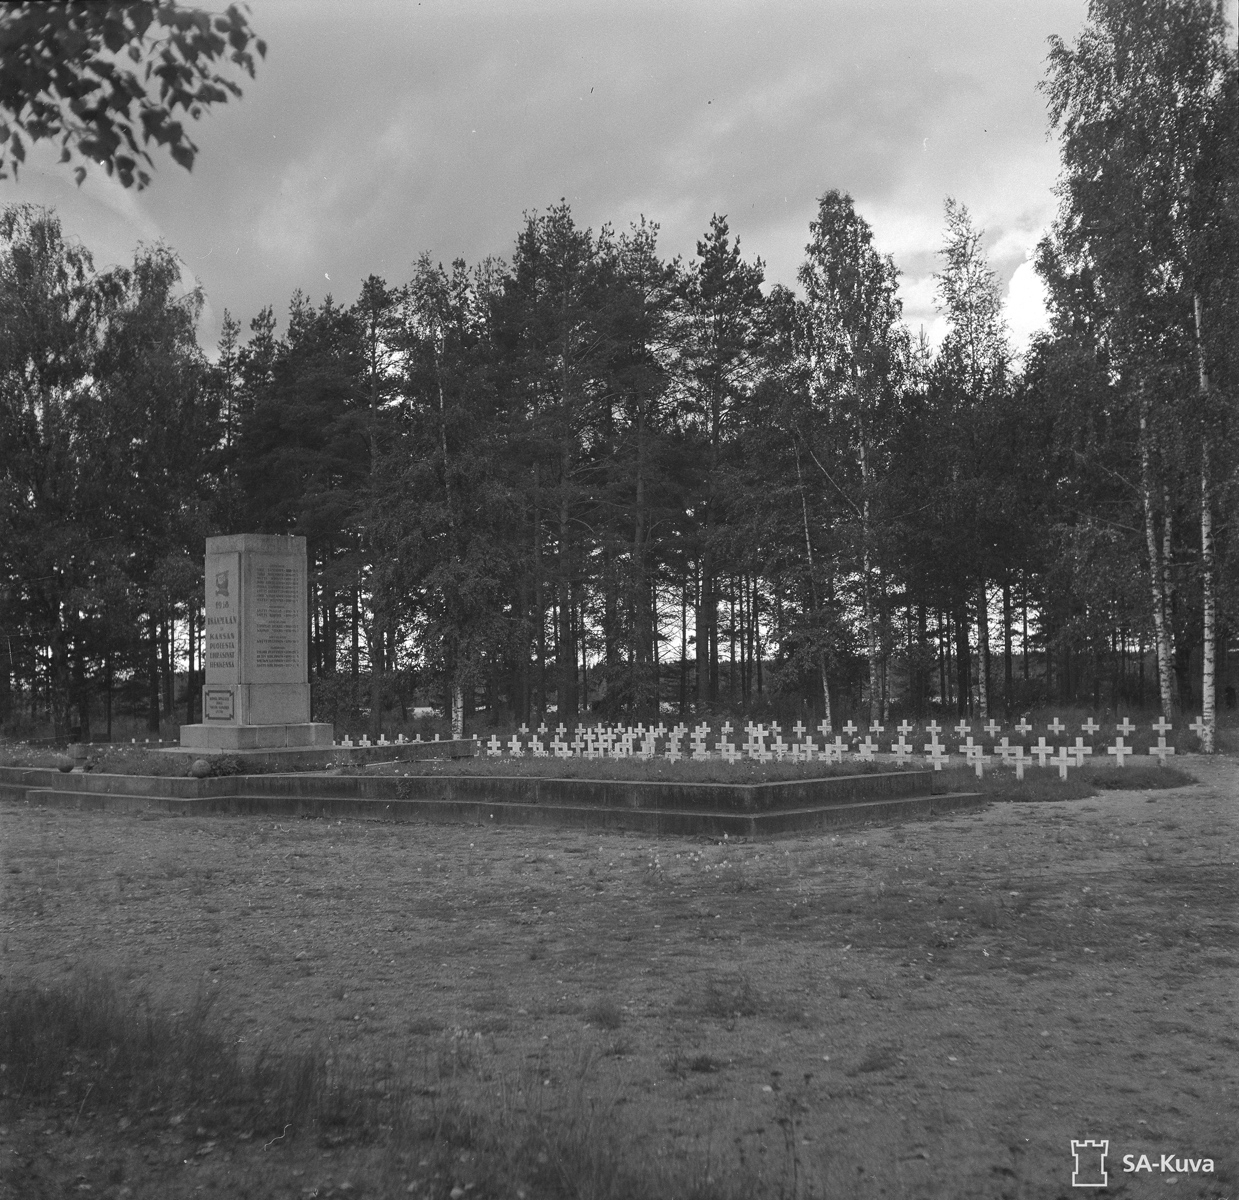 September 12, 1944. Monument in Antrea